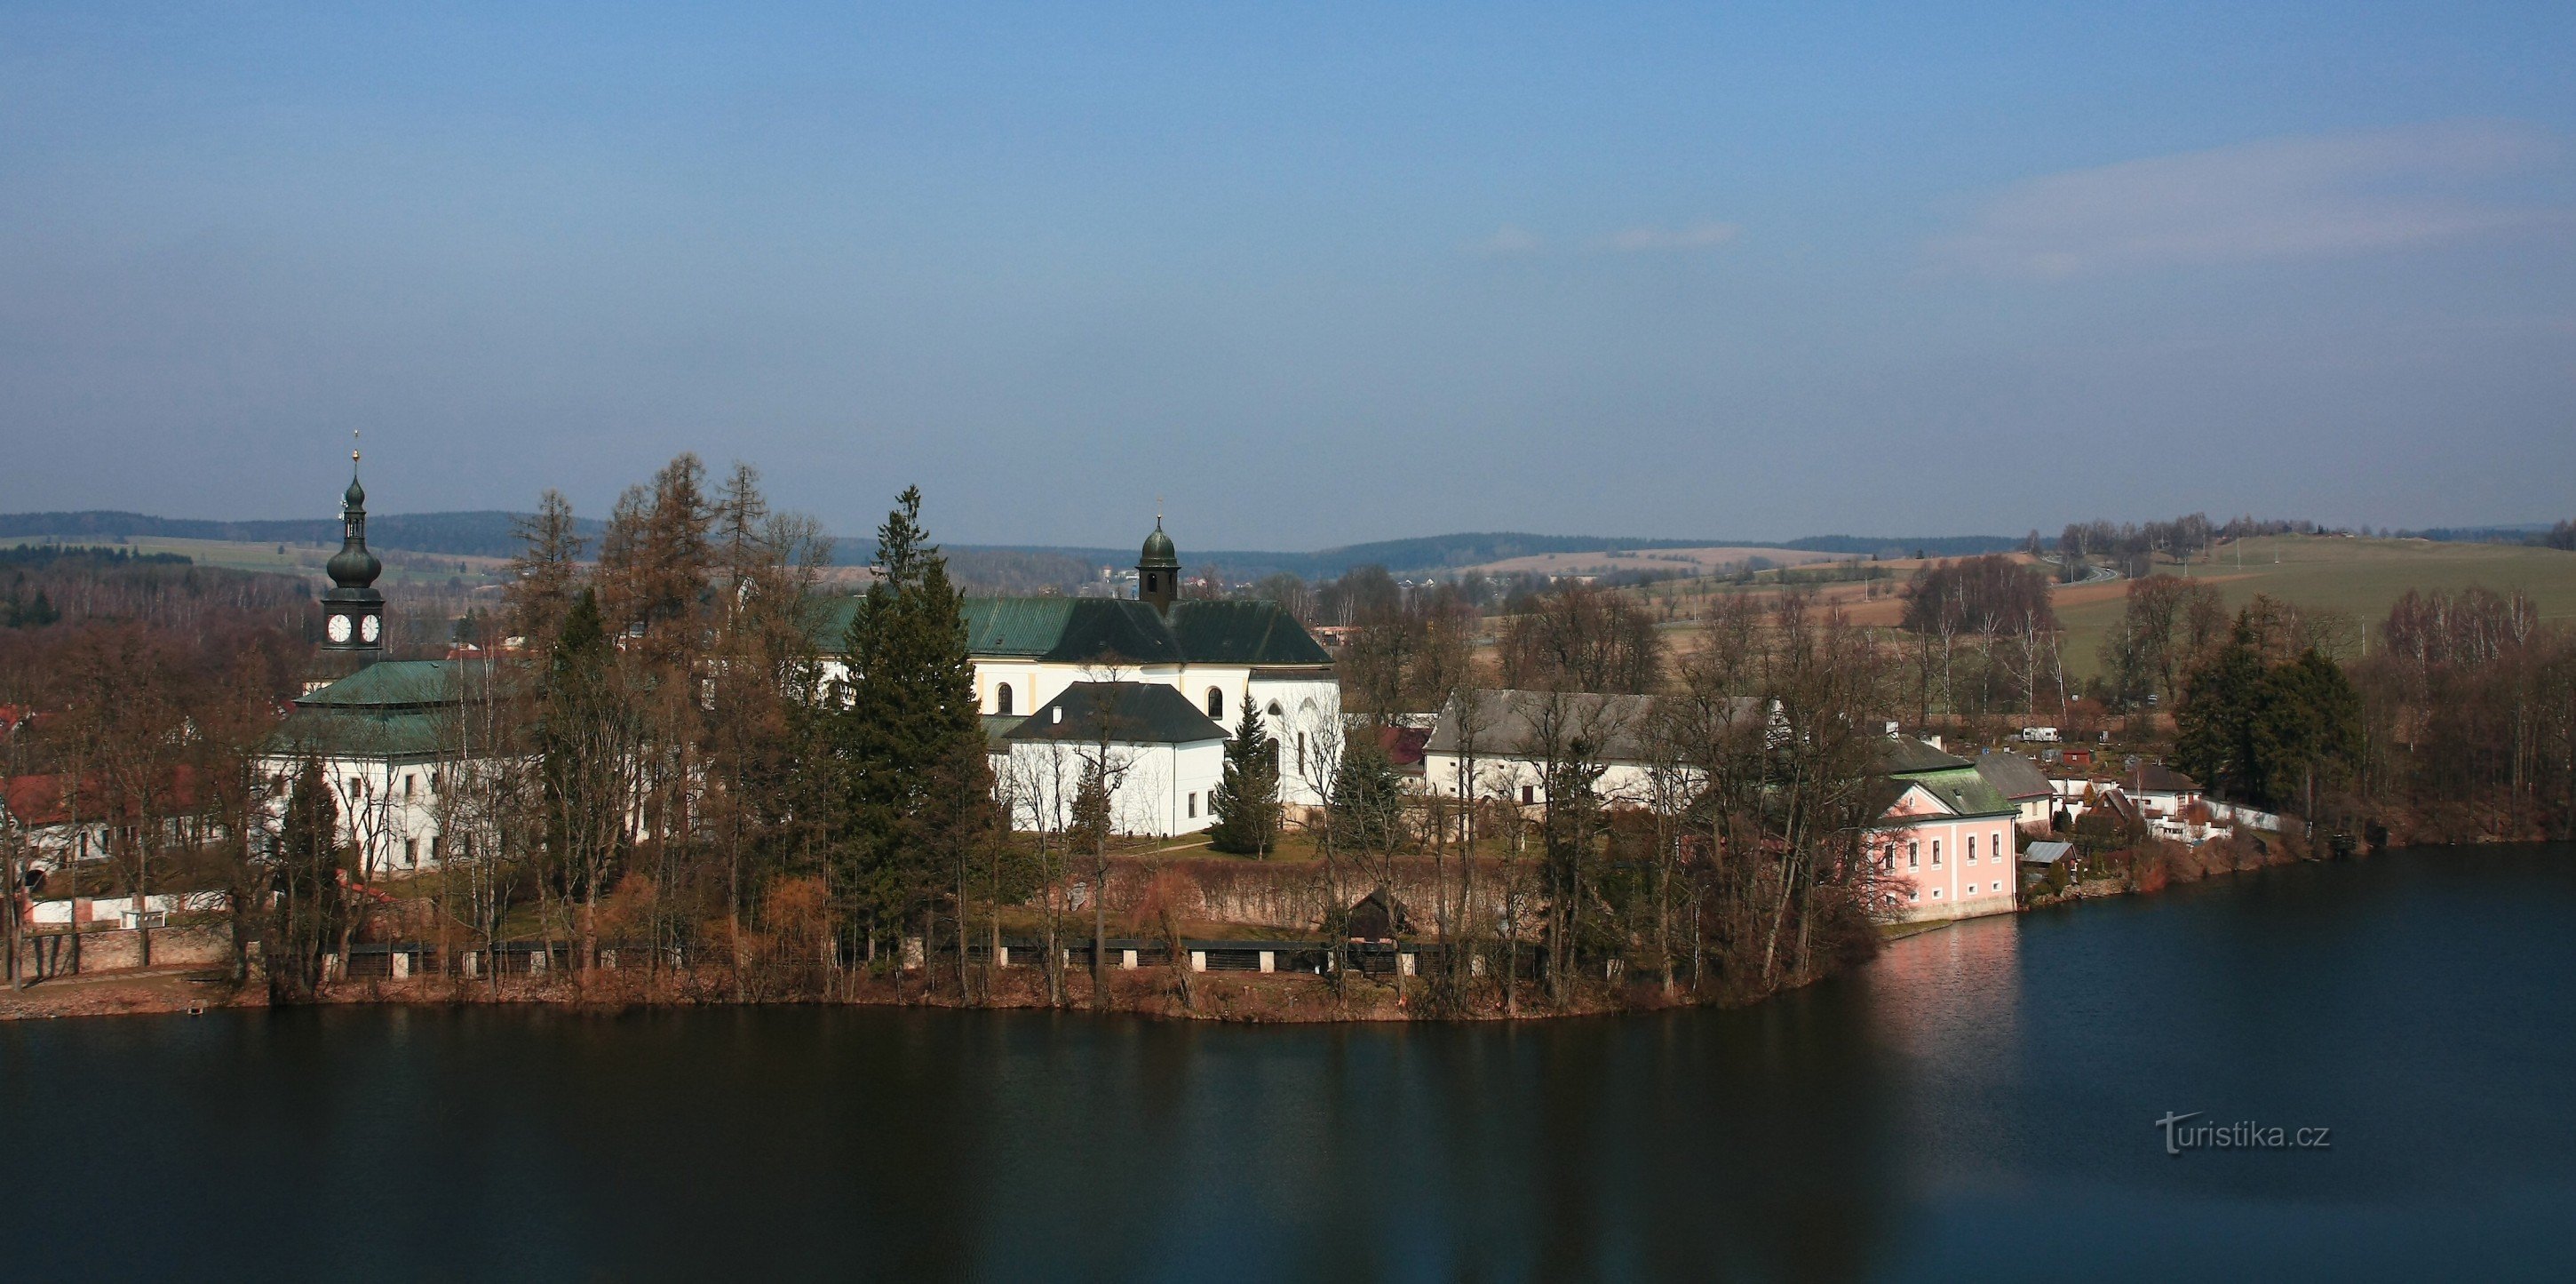 Žďár nad Sázavou - вид на замковий комплекс з паломницької церкви св. Ян Непом